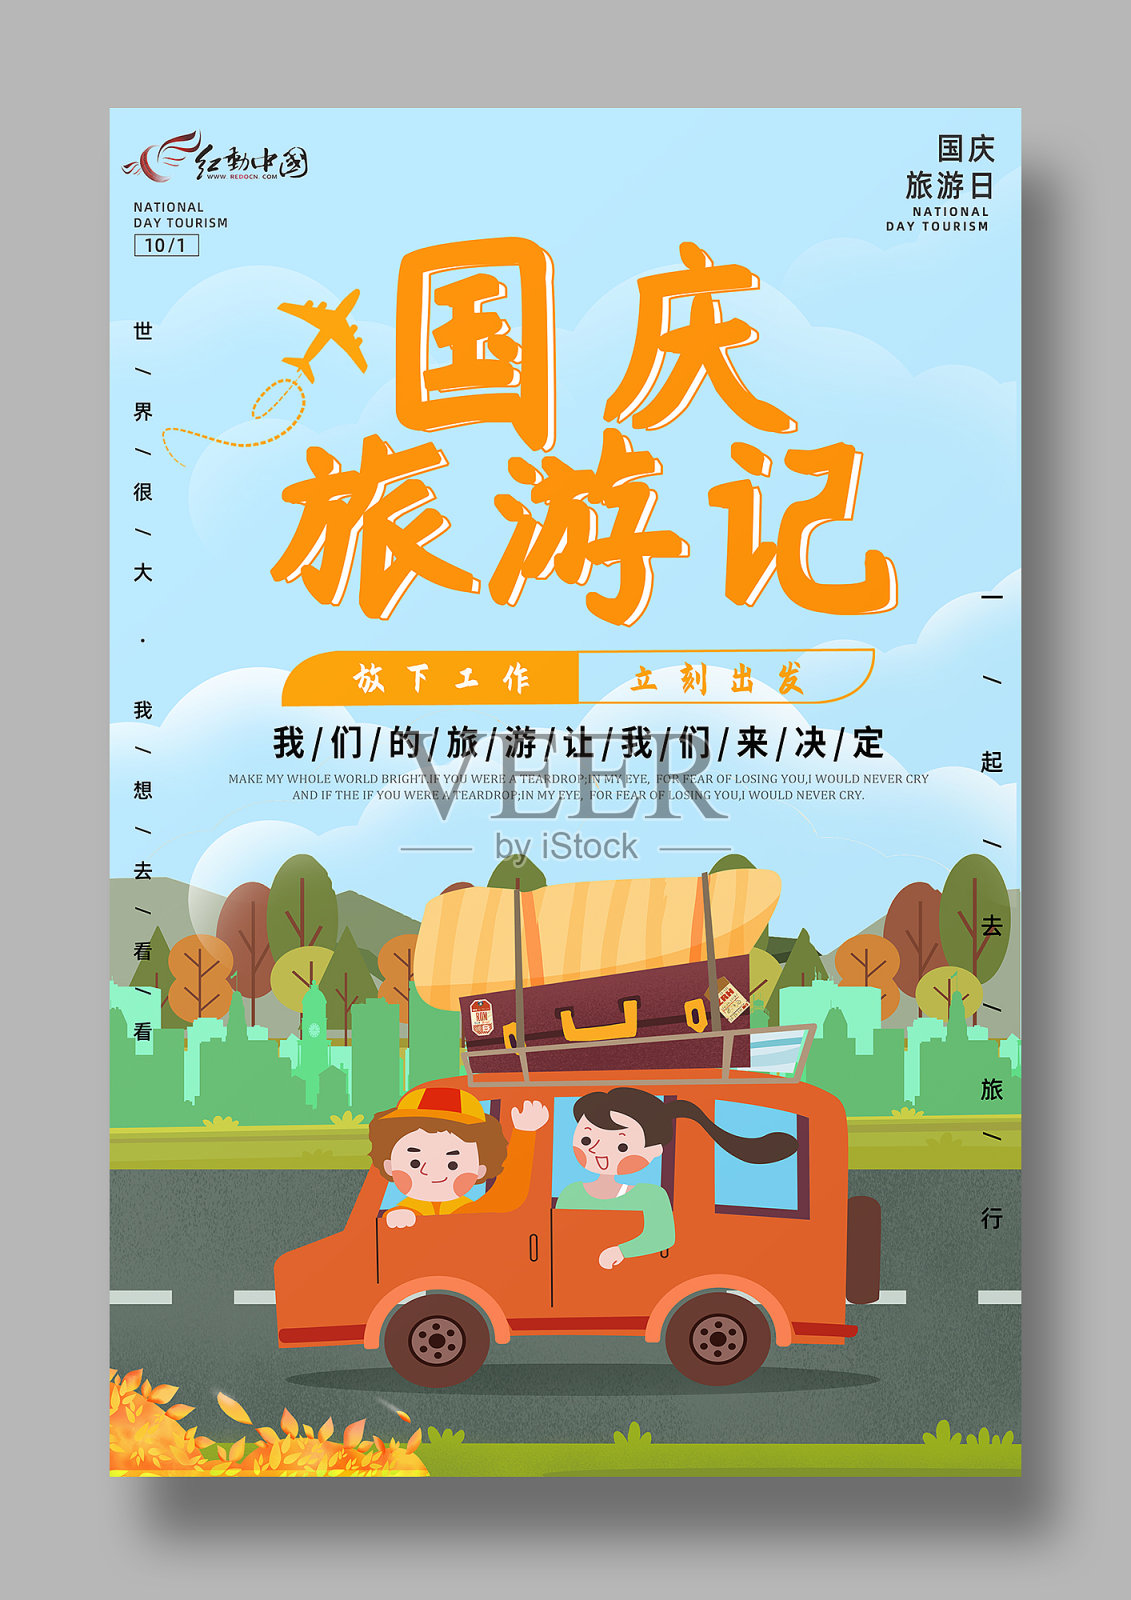 国庆旅游宣传海报设计模板素材